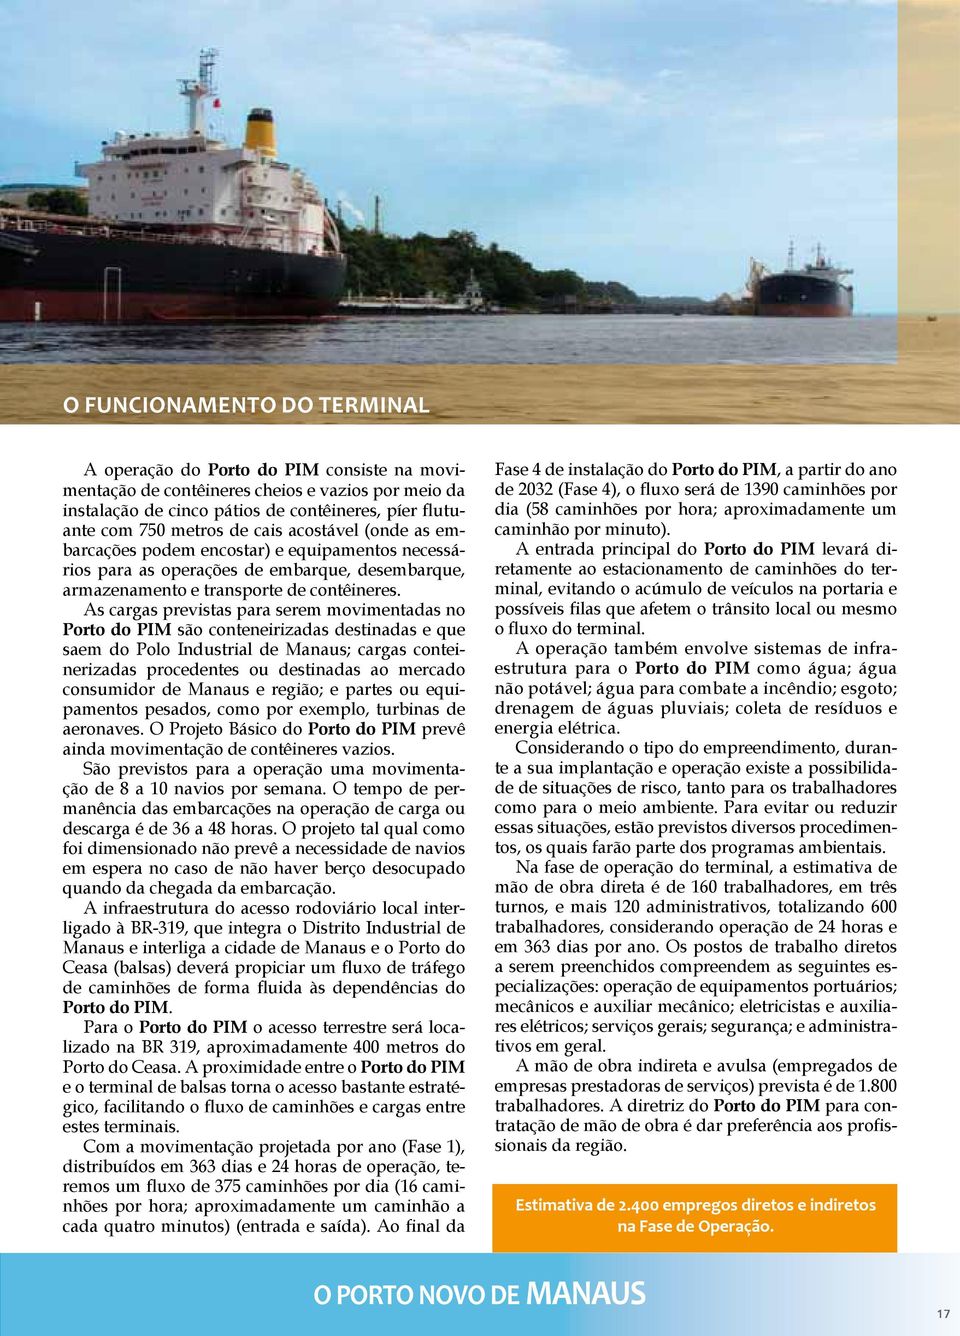 As cargas previstas para serem movimentadas no Porto do PIM são conteneirizadas destinadas e que saem do Polo Industrial de Manaus; cargas conteinerizadas procedentes ou destinadas ao mercado